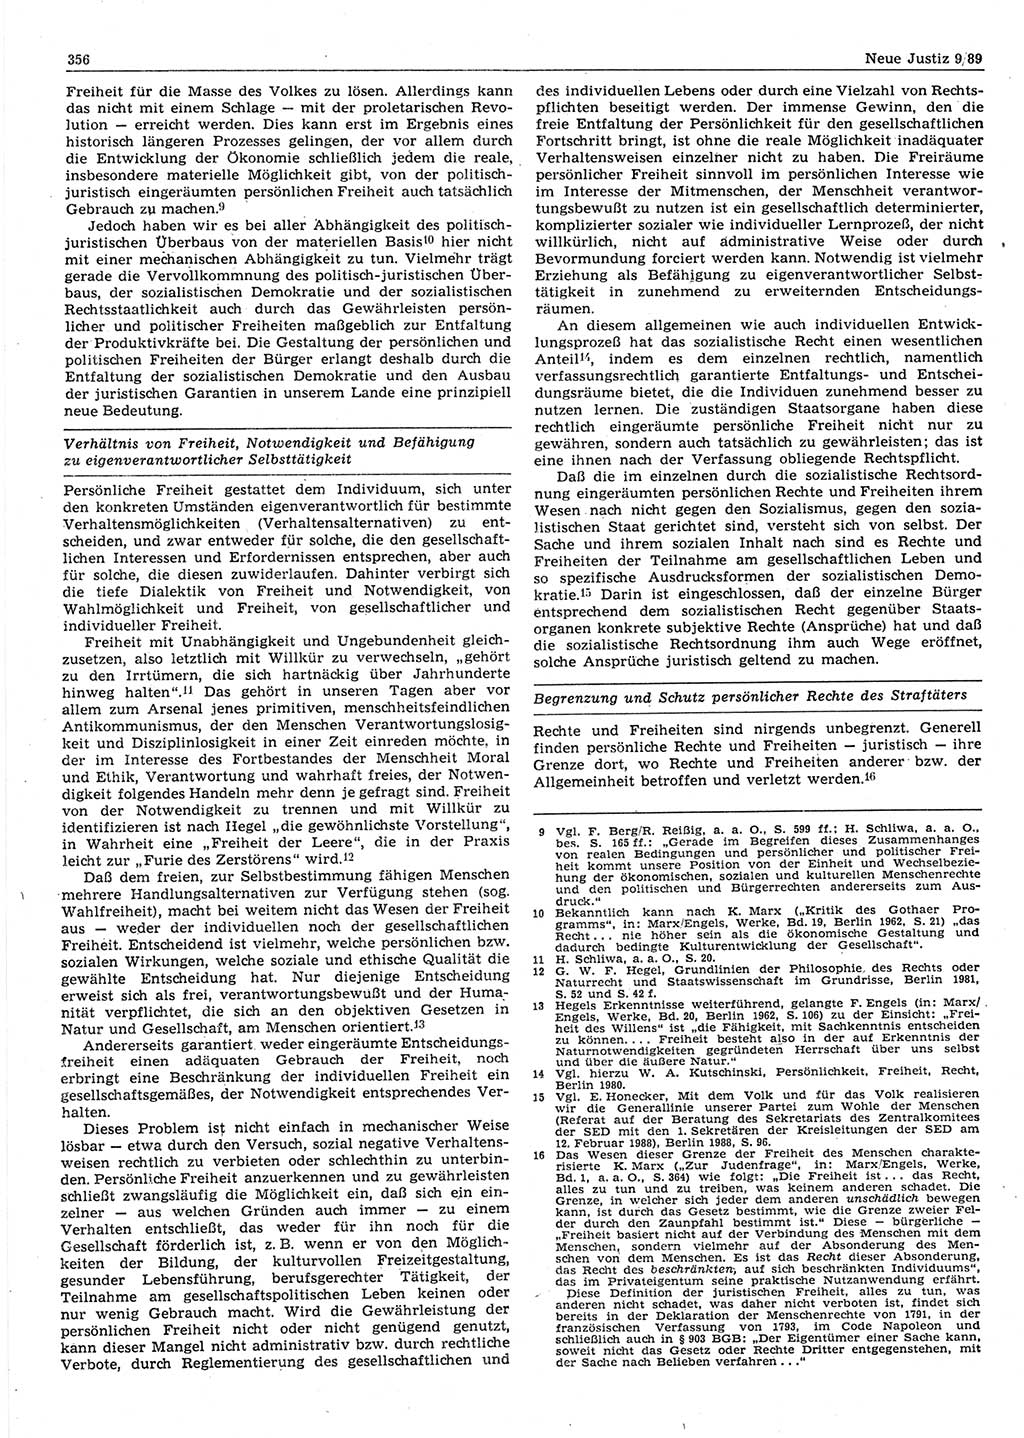 Neue Justiz (NJ), Zeitschrift für sozialistisches Recht und Gesetzlichkeit [Deutsche Demokratische Republik (DDR)], 43. Jahrgang 1989, Seite 356 (NJ DDR 1989, S. 356)